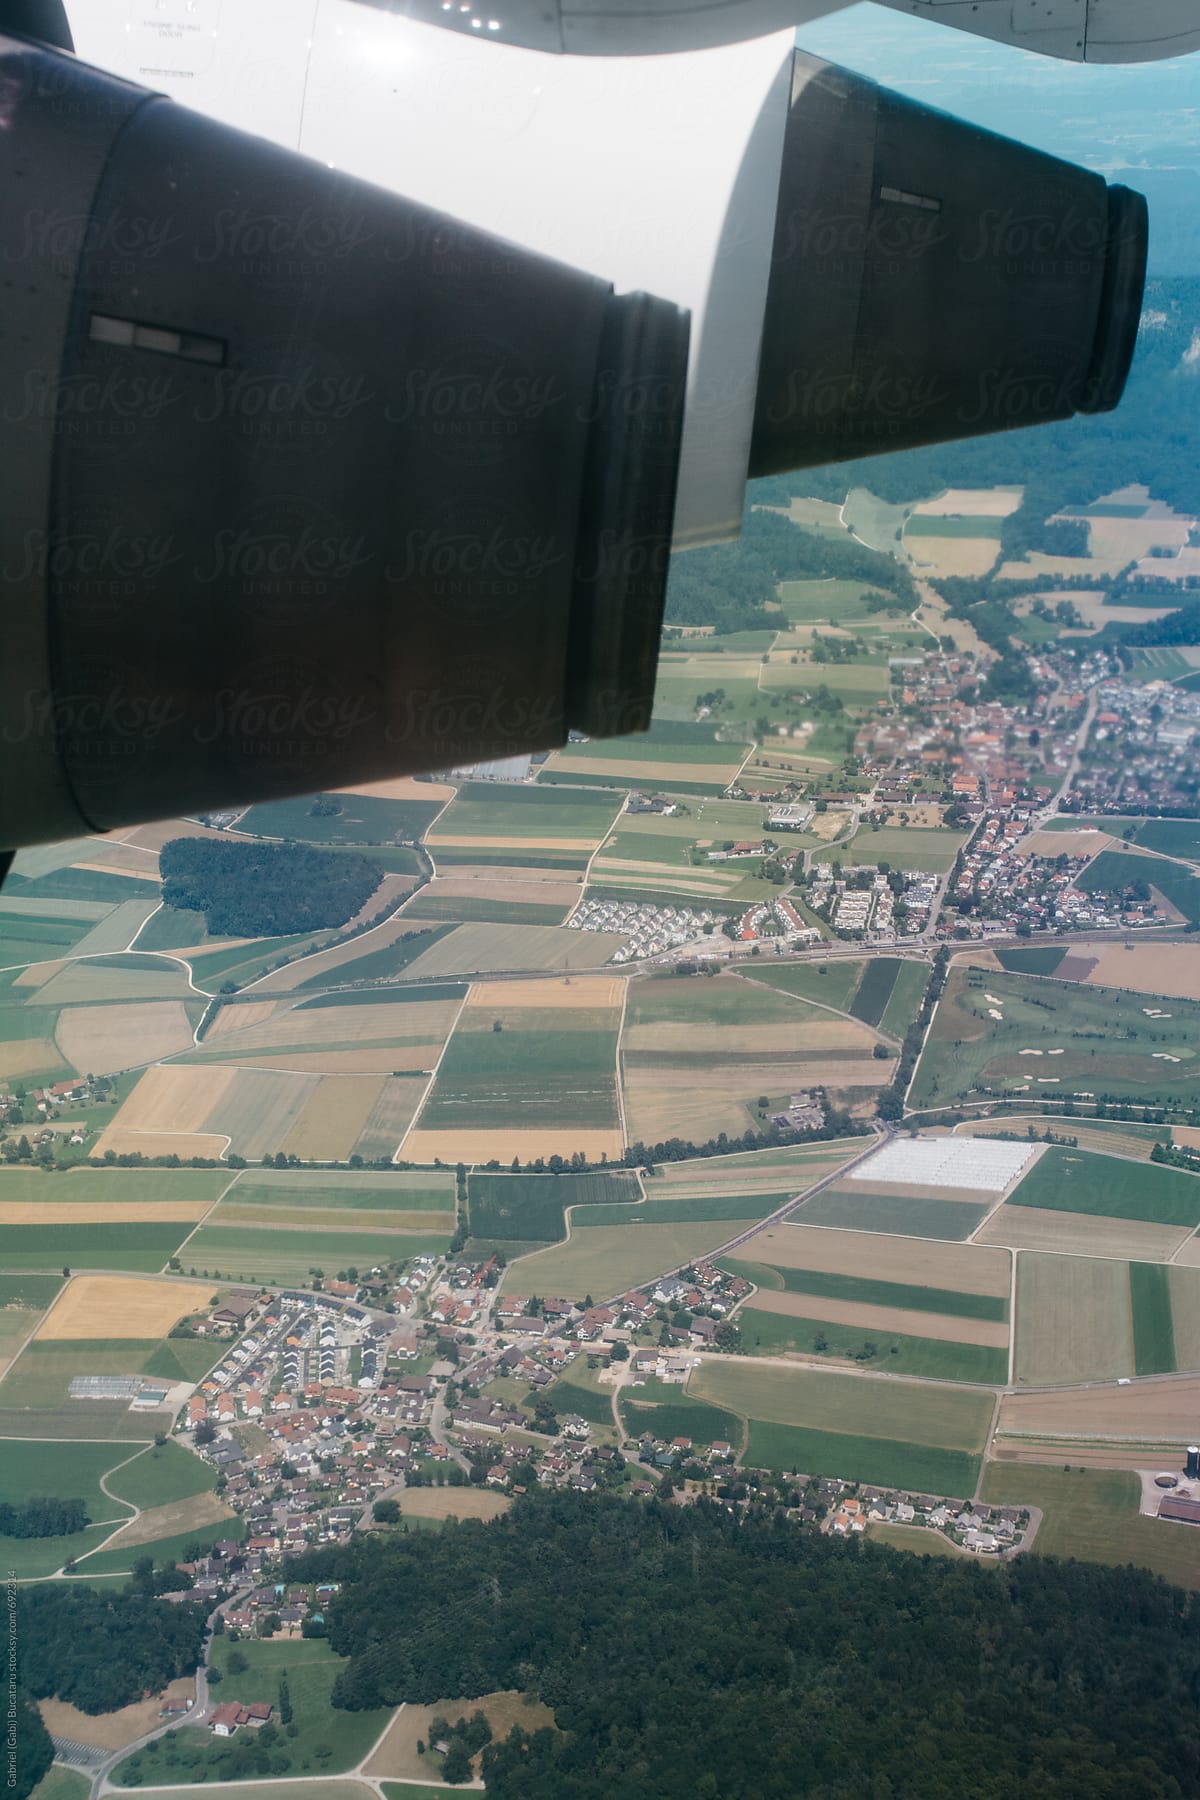 Swiss landscape from an aircraft window